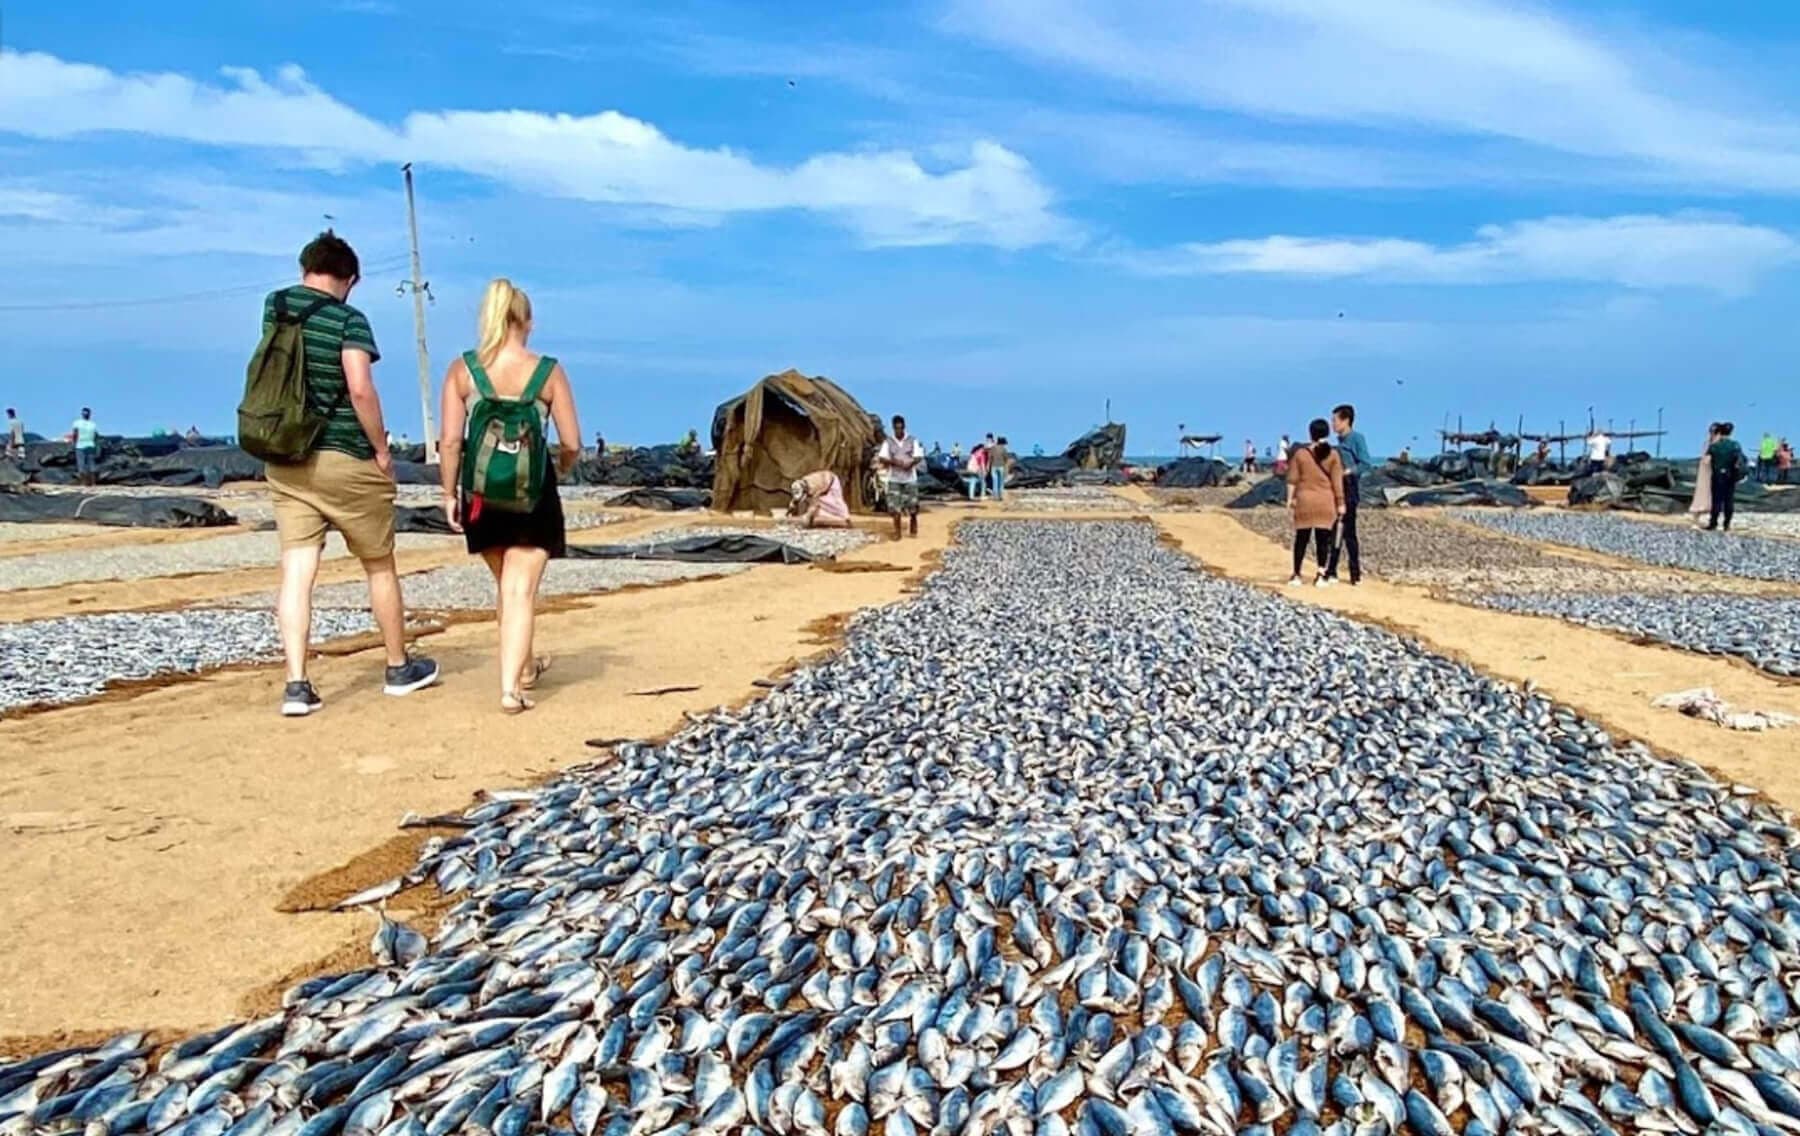 El pescado se seca en el pueblo pesquero de Negombo, Sri Lanka.